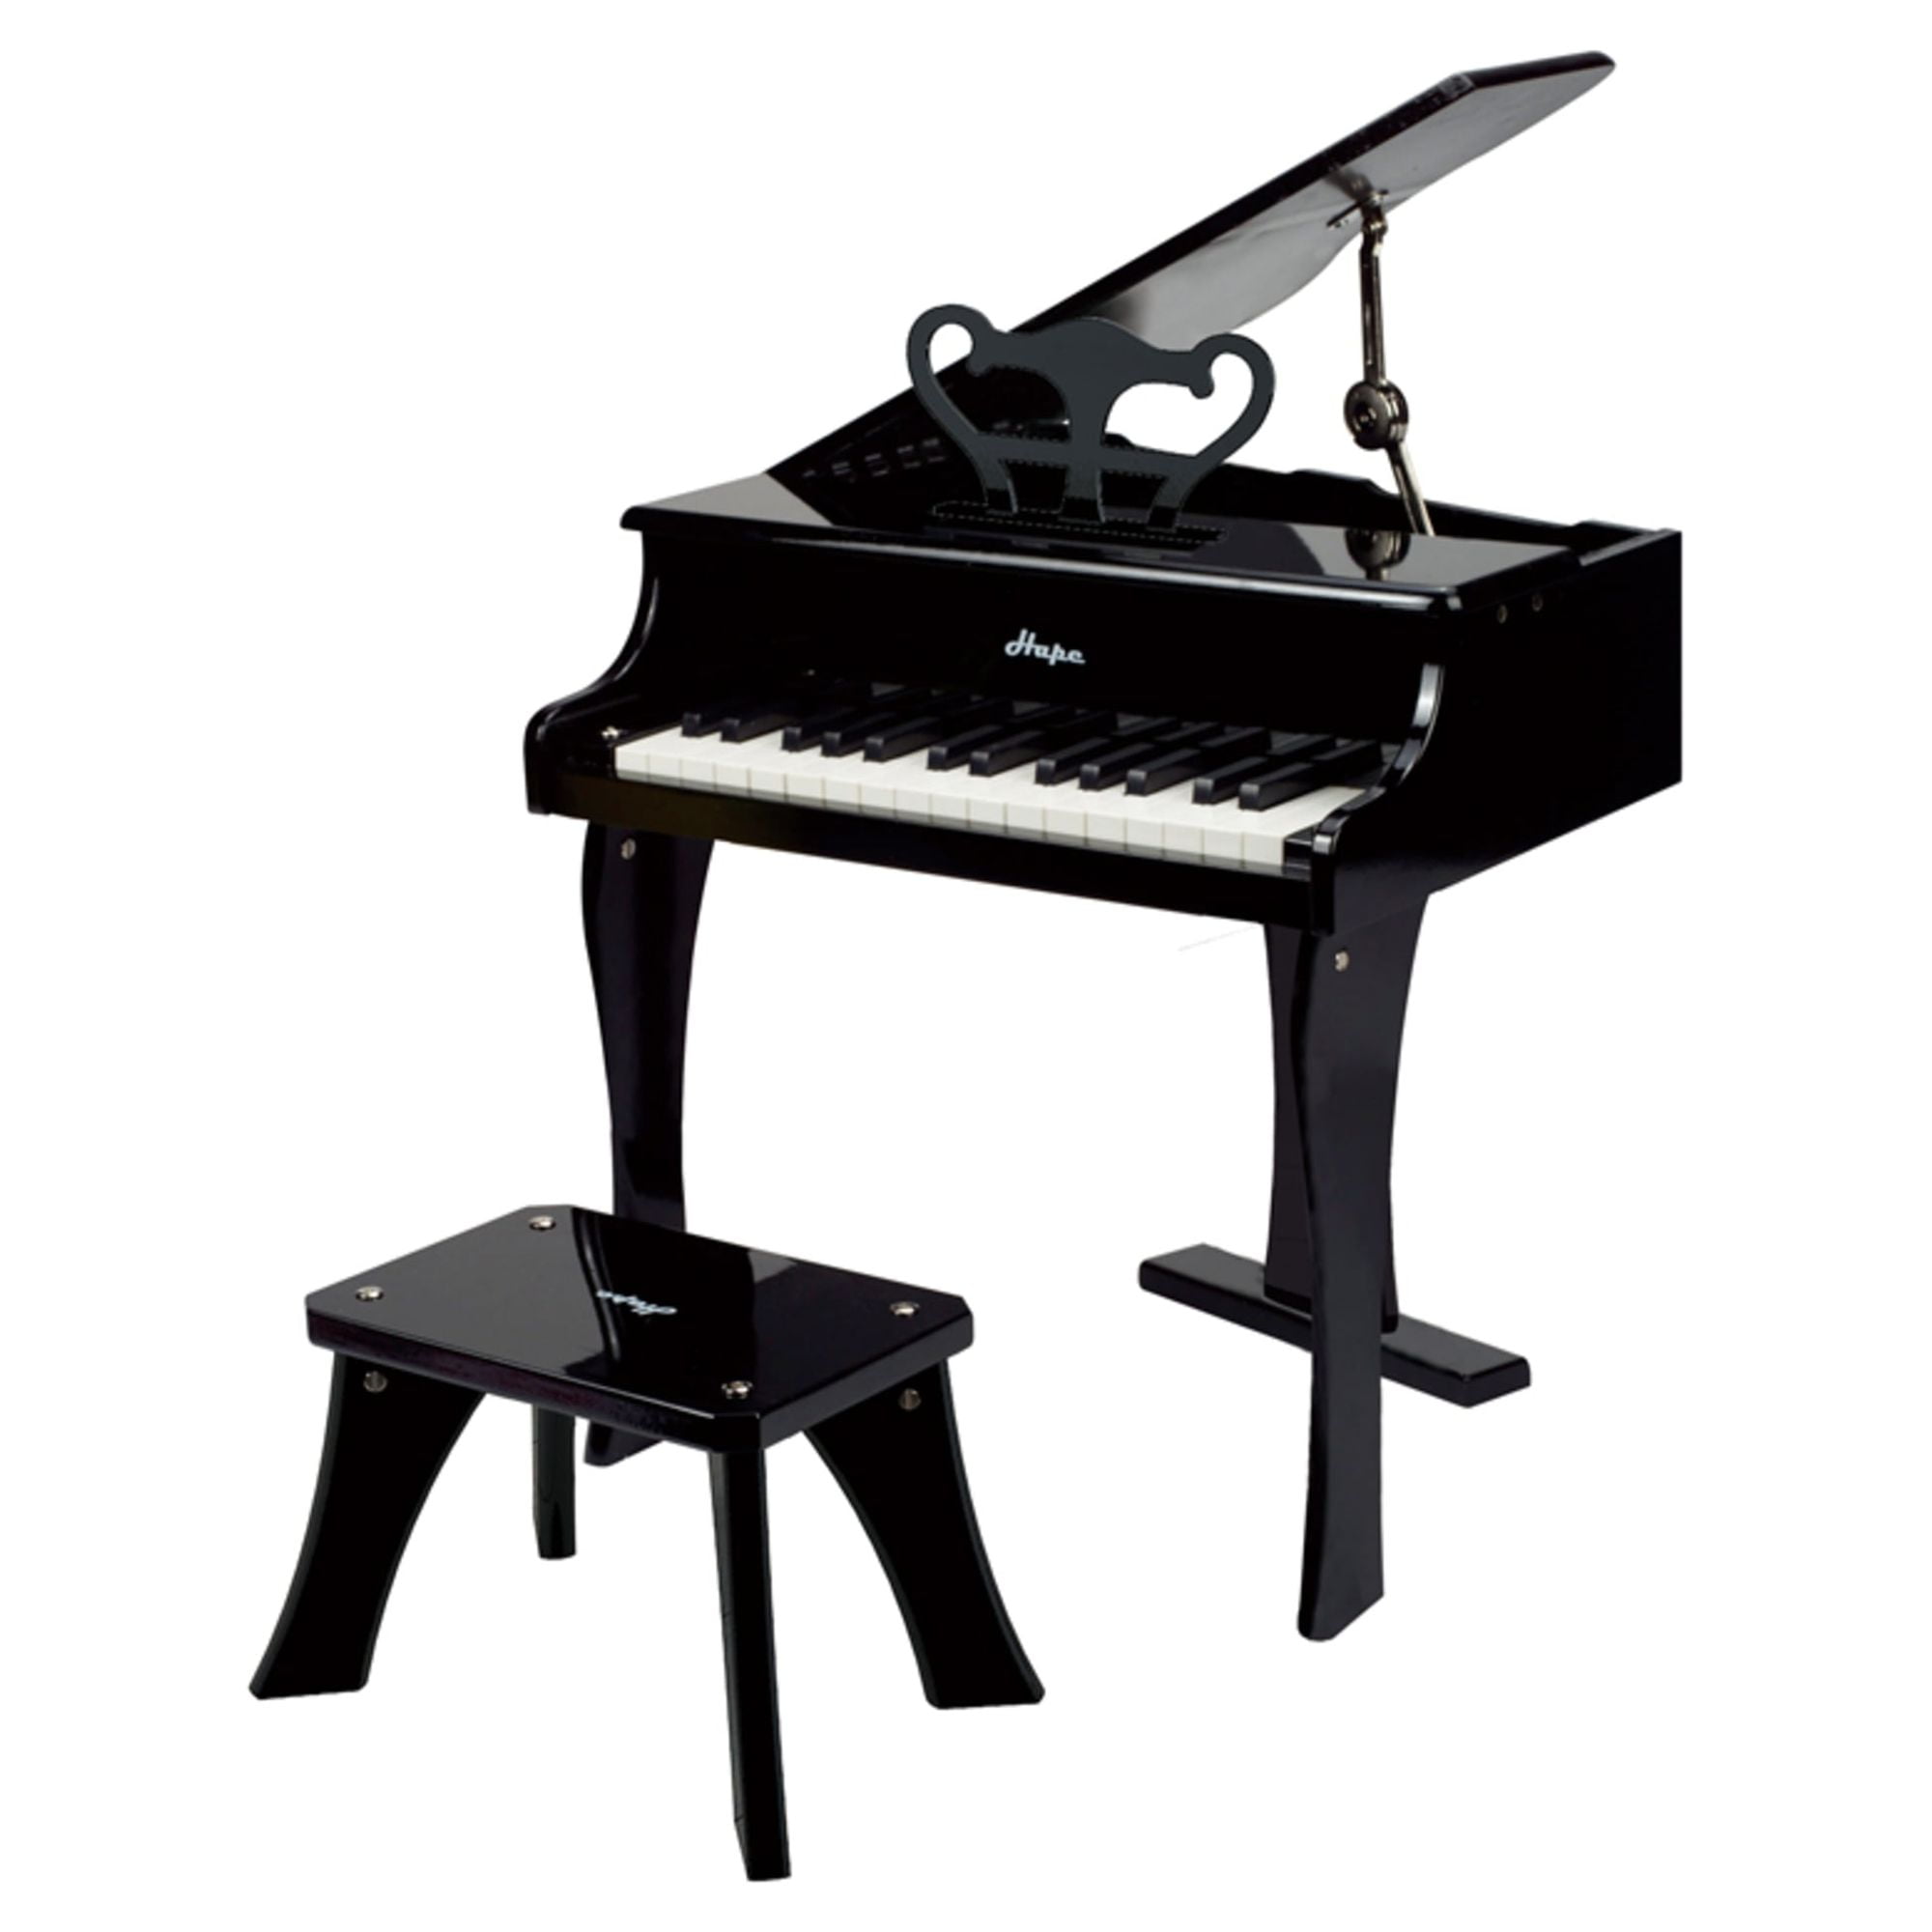 Piano électronique droit noir 30 touches pour enfant Hape